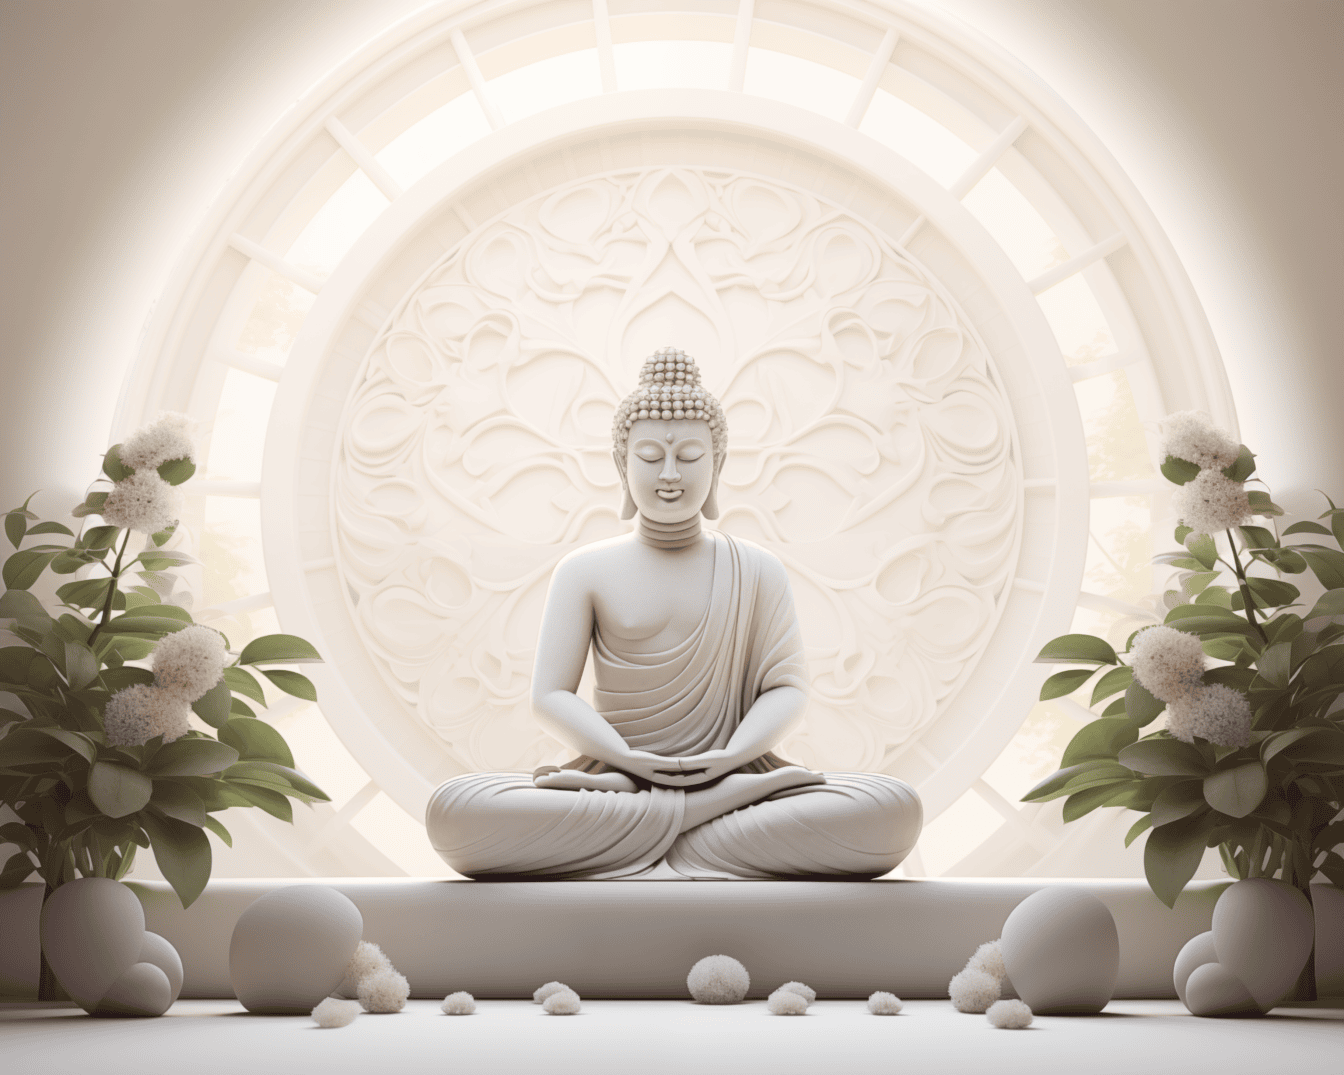 Bức tượng Phật trắng tráng lệ ngồi trong tư thế hoa sen và thiền định bên cạnh những bông hoa trắng